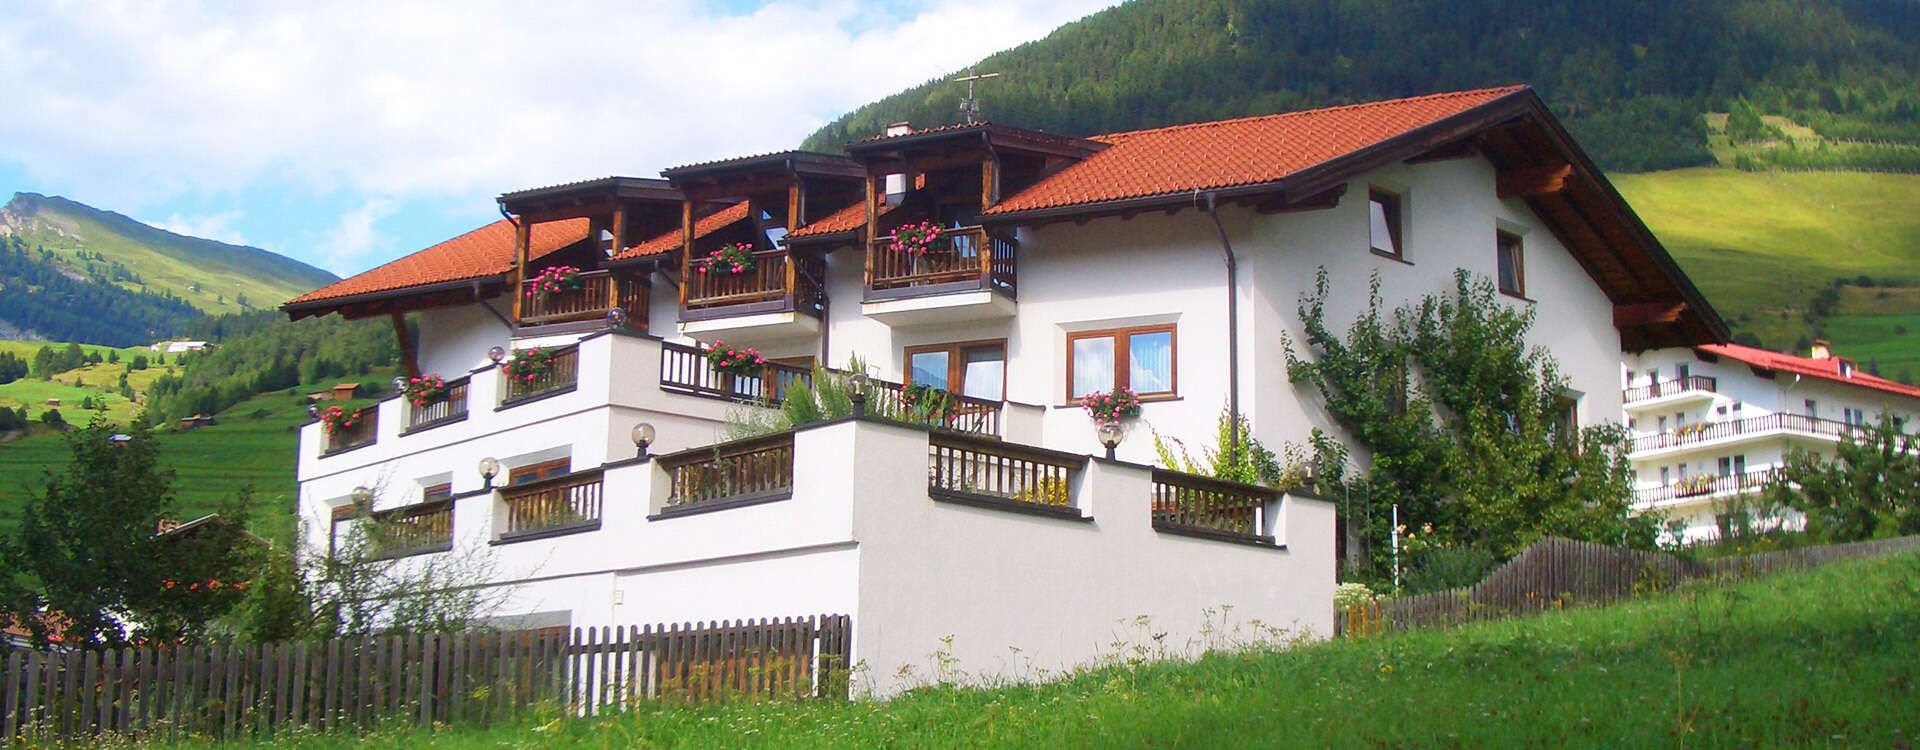 Ferienhaus Auer in Nauders in Tirol